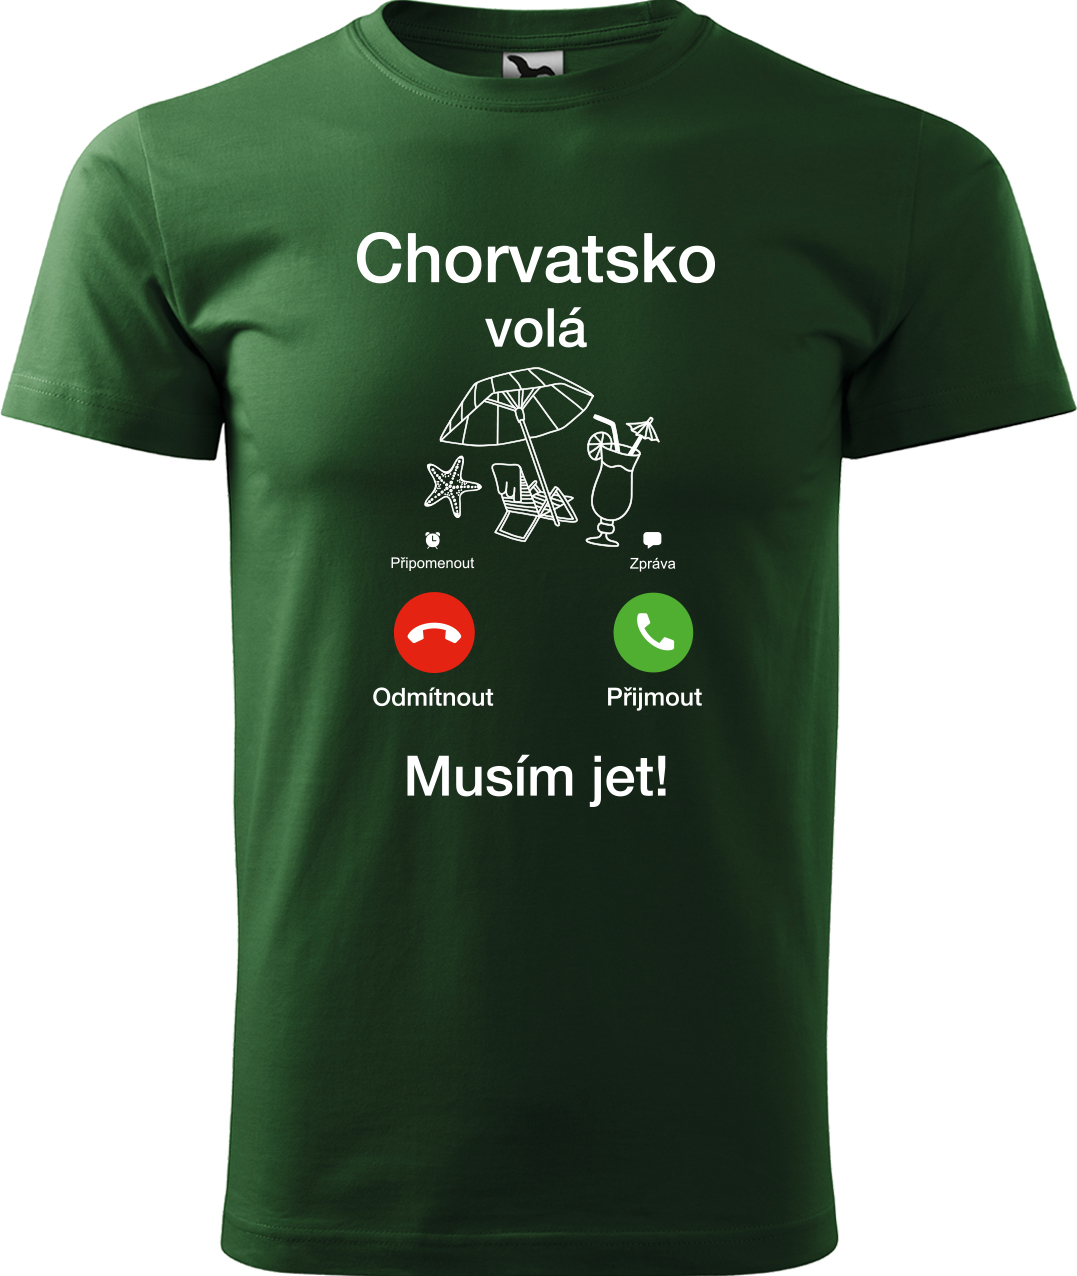 Pánské cestovatelské tričko - Chorvatsko volá - musím jet! Velikost: L, Barva: Lahvově zelená (06), Střih: pánský